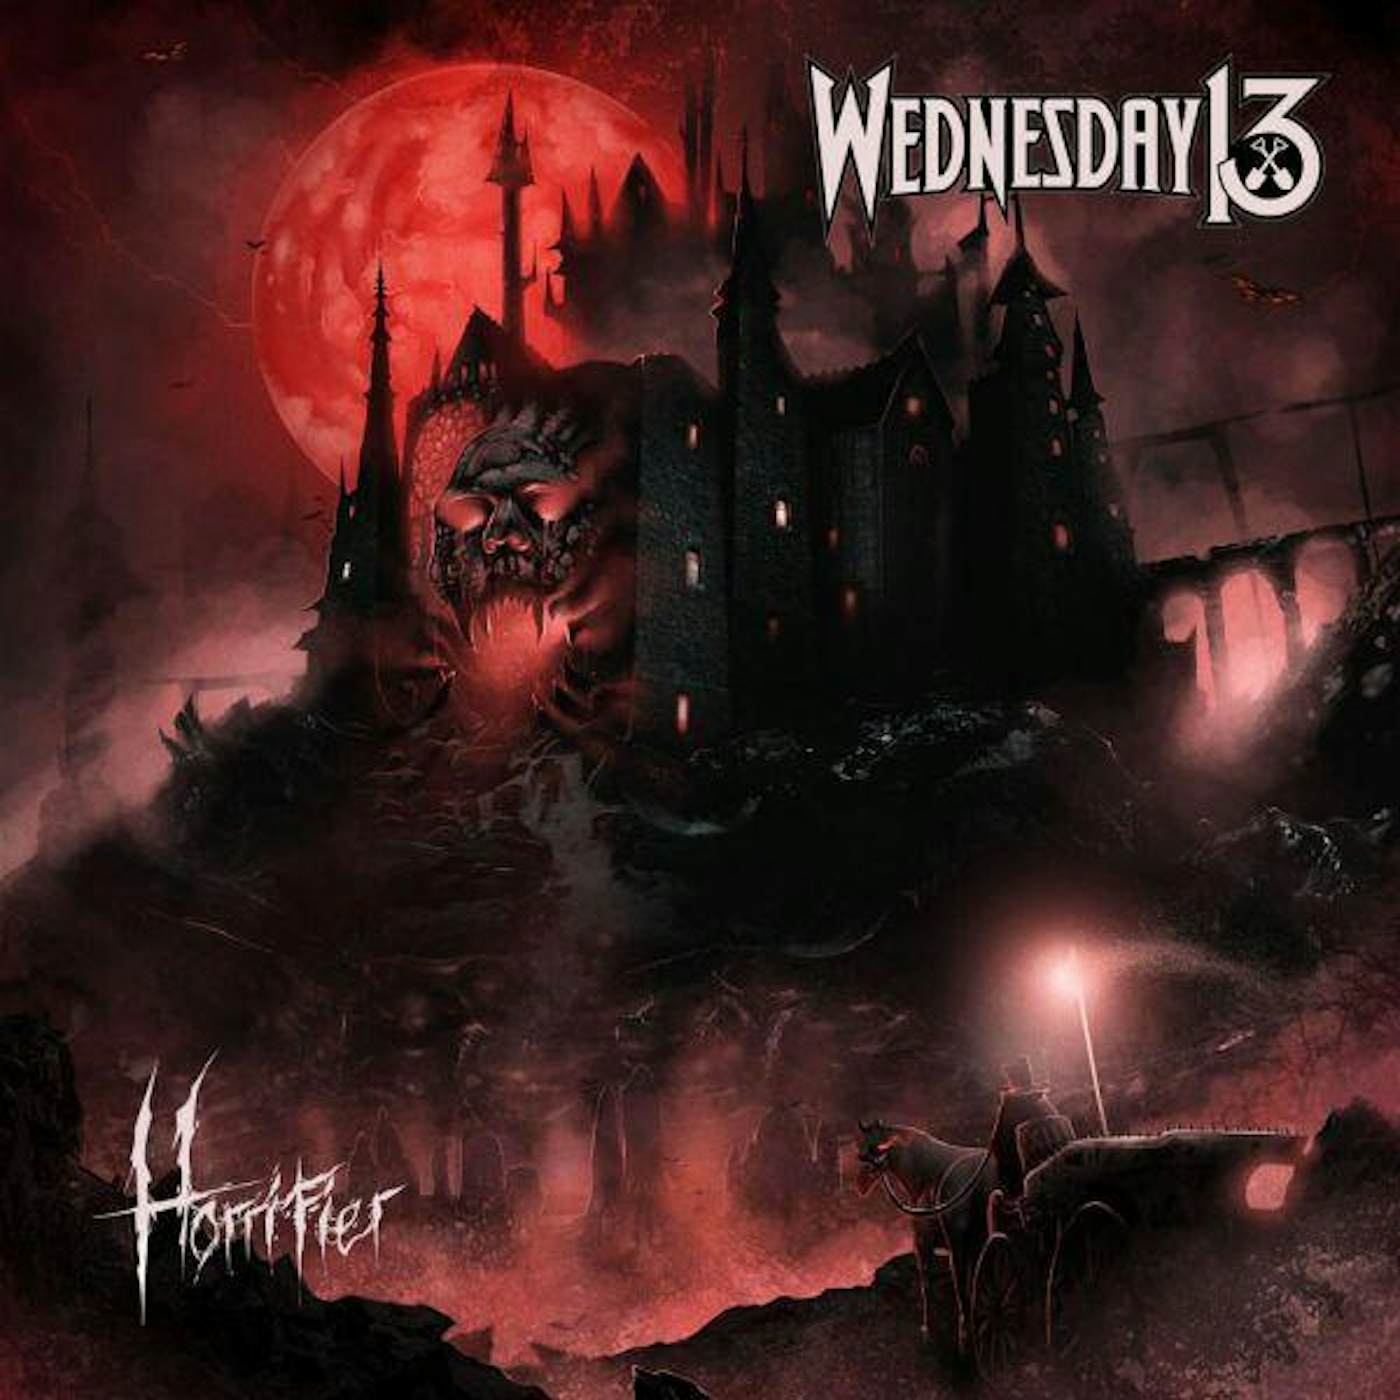 Wednesday 13 Horrifier Vinyl Record